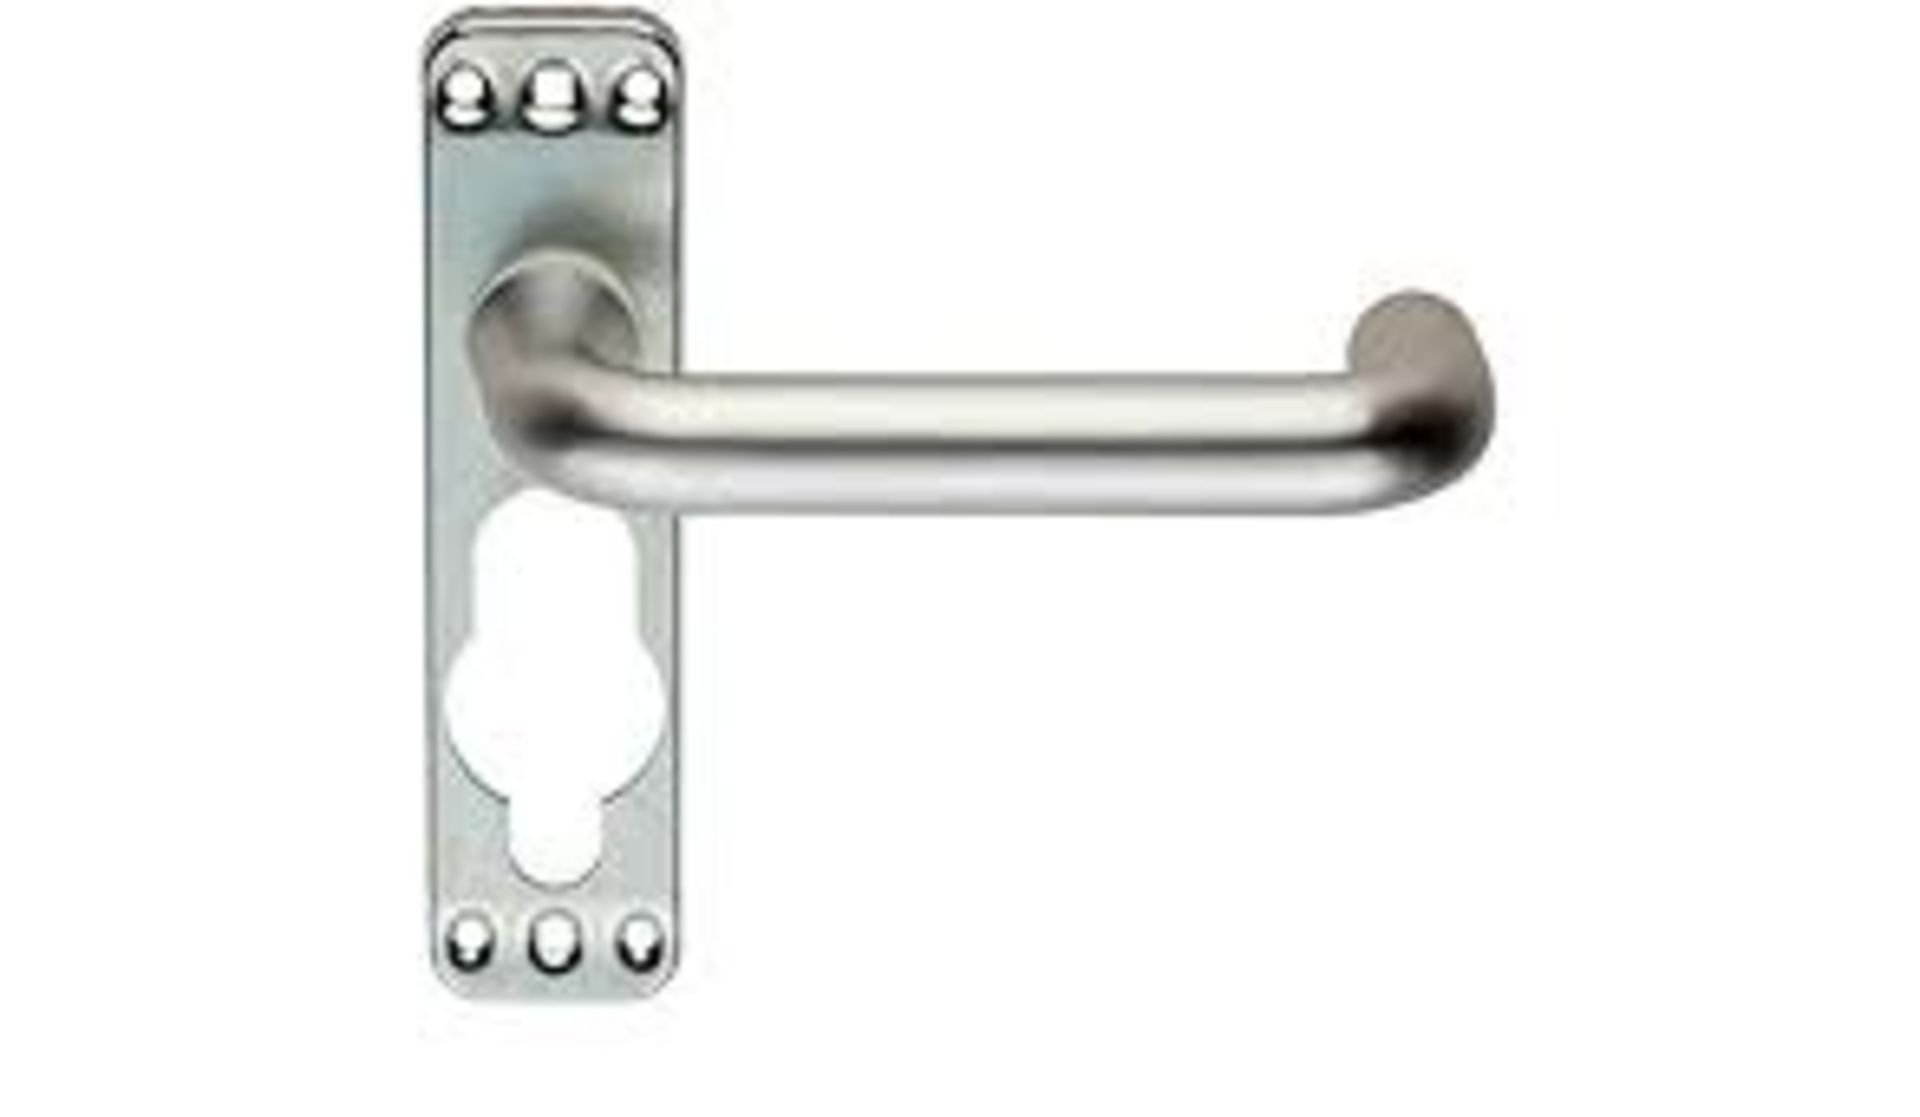 12 x Eurospec Safety Door Handles Plate Handles - Brand New Stock - Product Code: LIP9001SAA - CL538